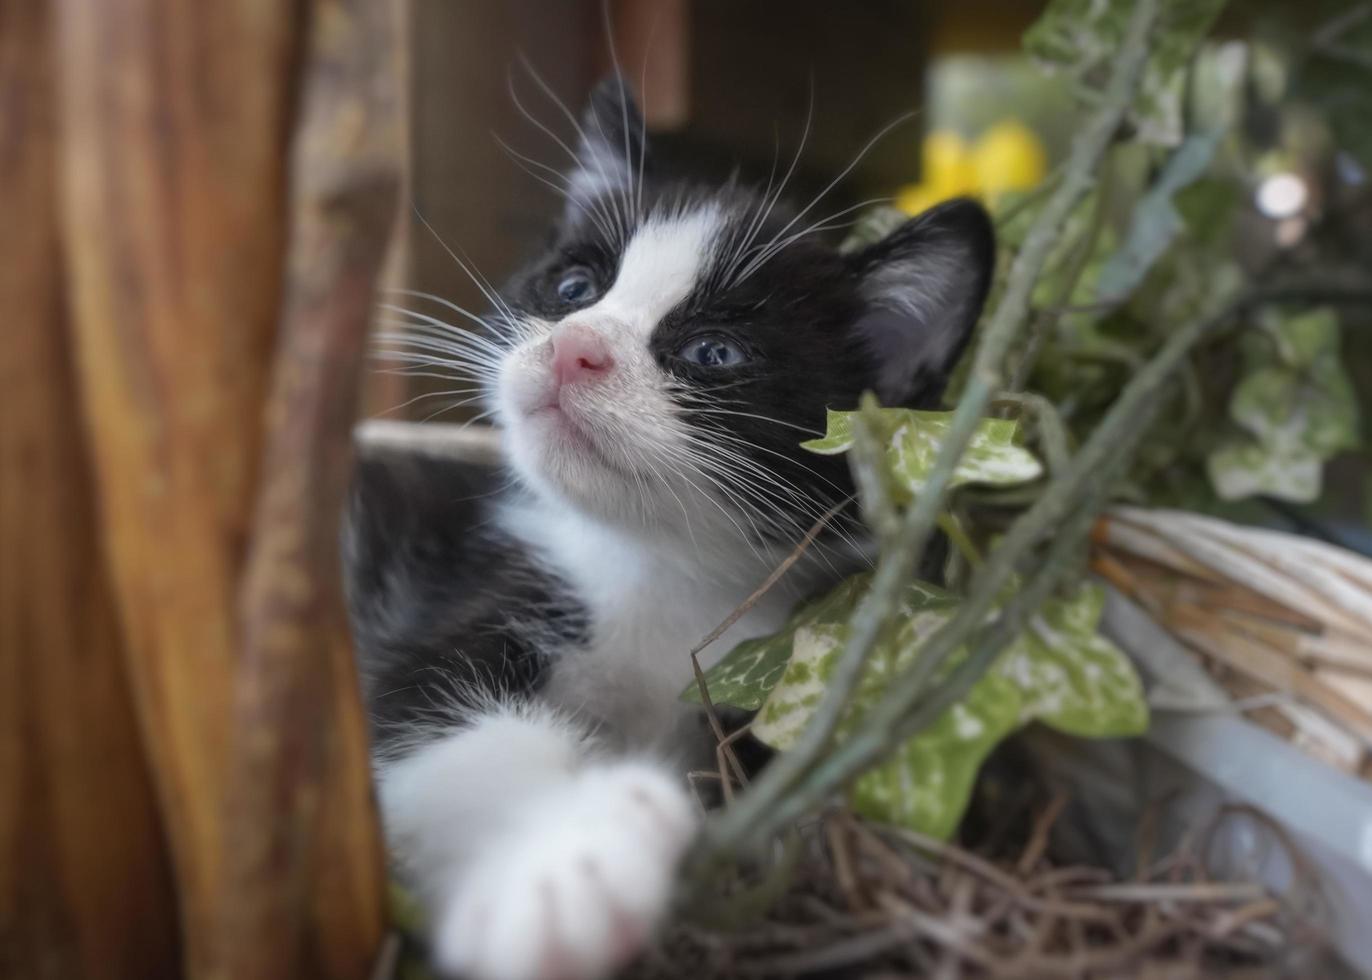 belleville, il 2022 - gatinho preto e branco descansando em vaso de flores foto